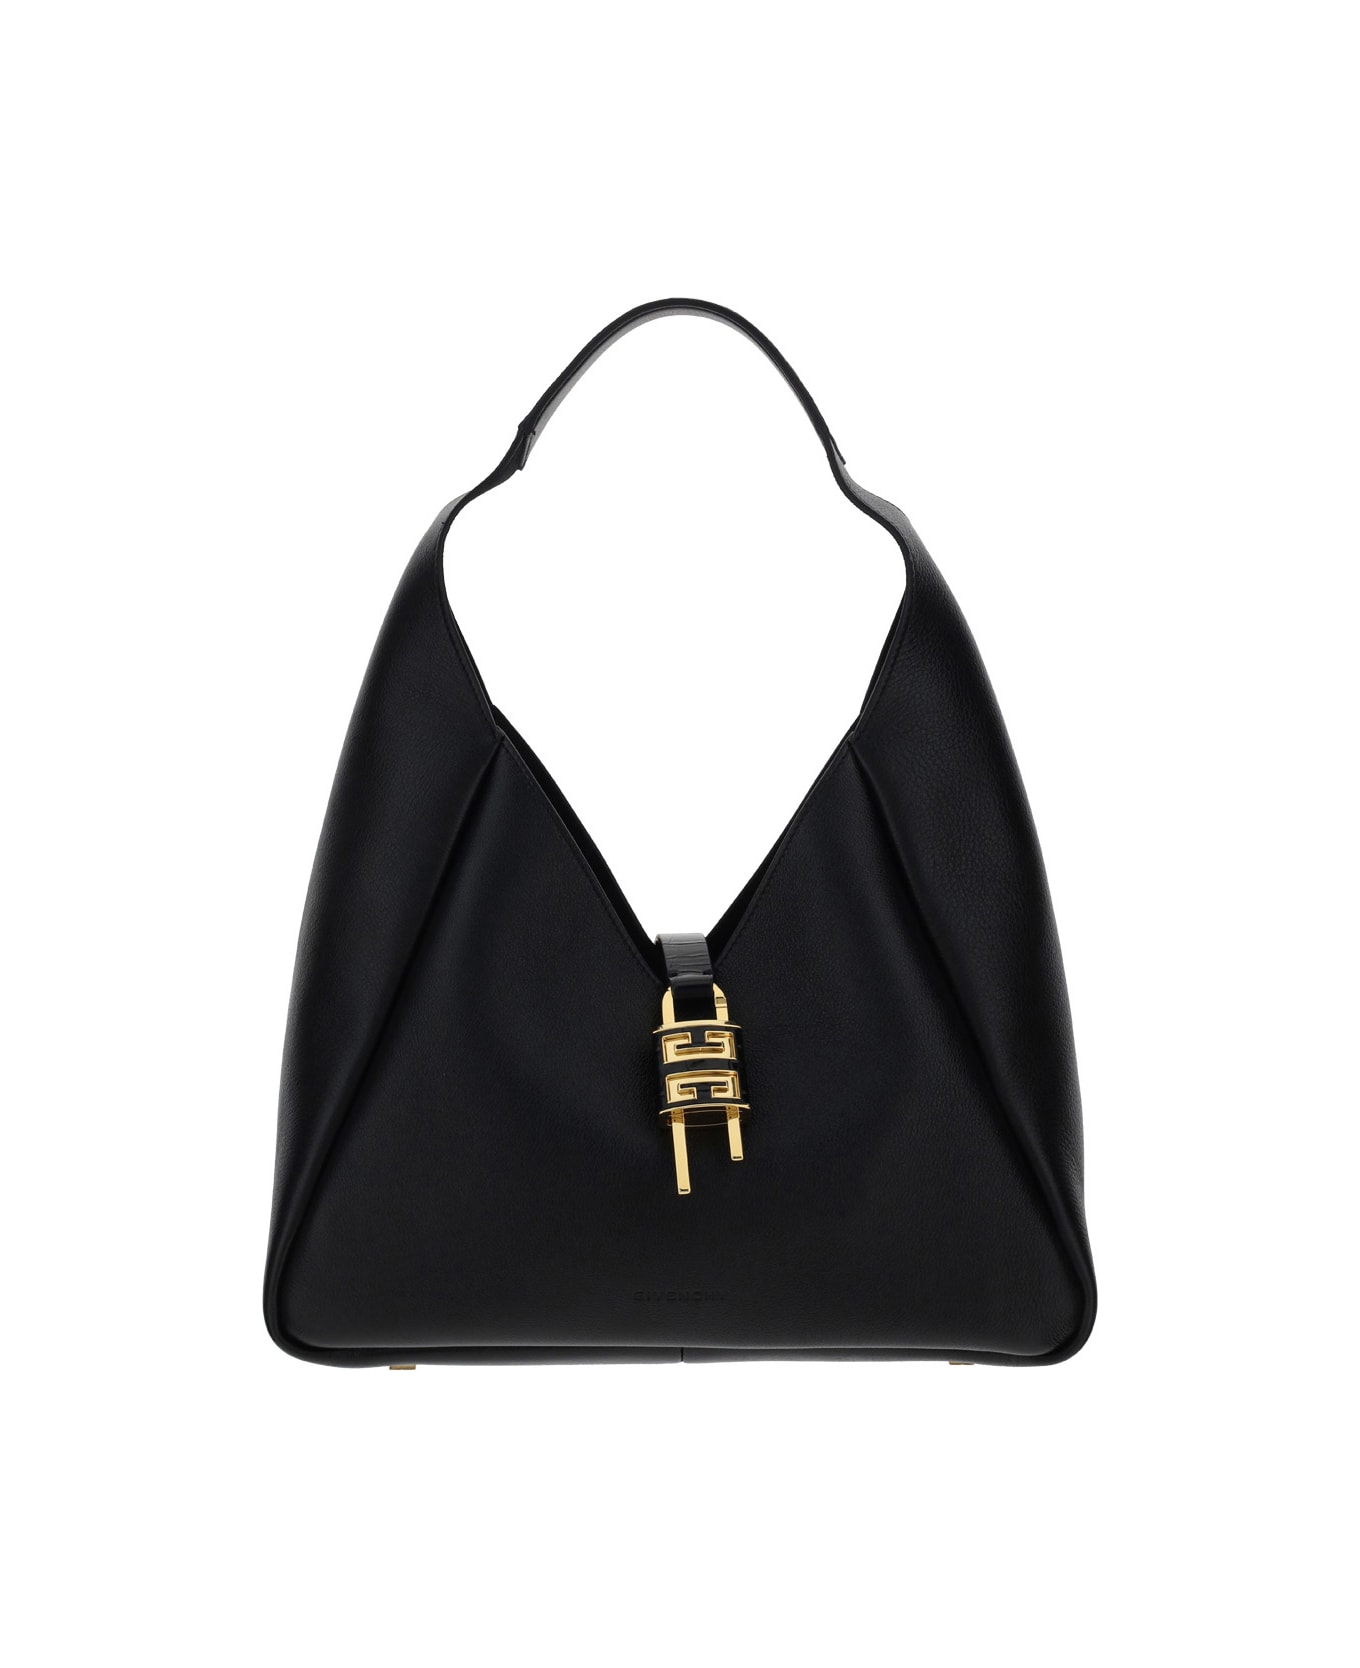 Givenchy G-hobo Shoulder Bag - Black トートバッグ